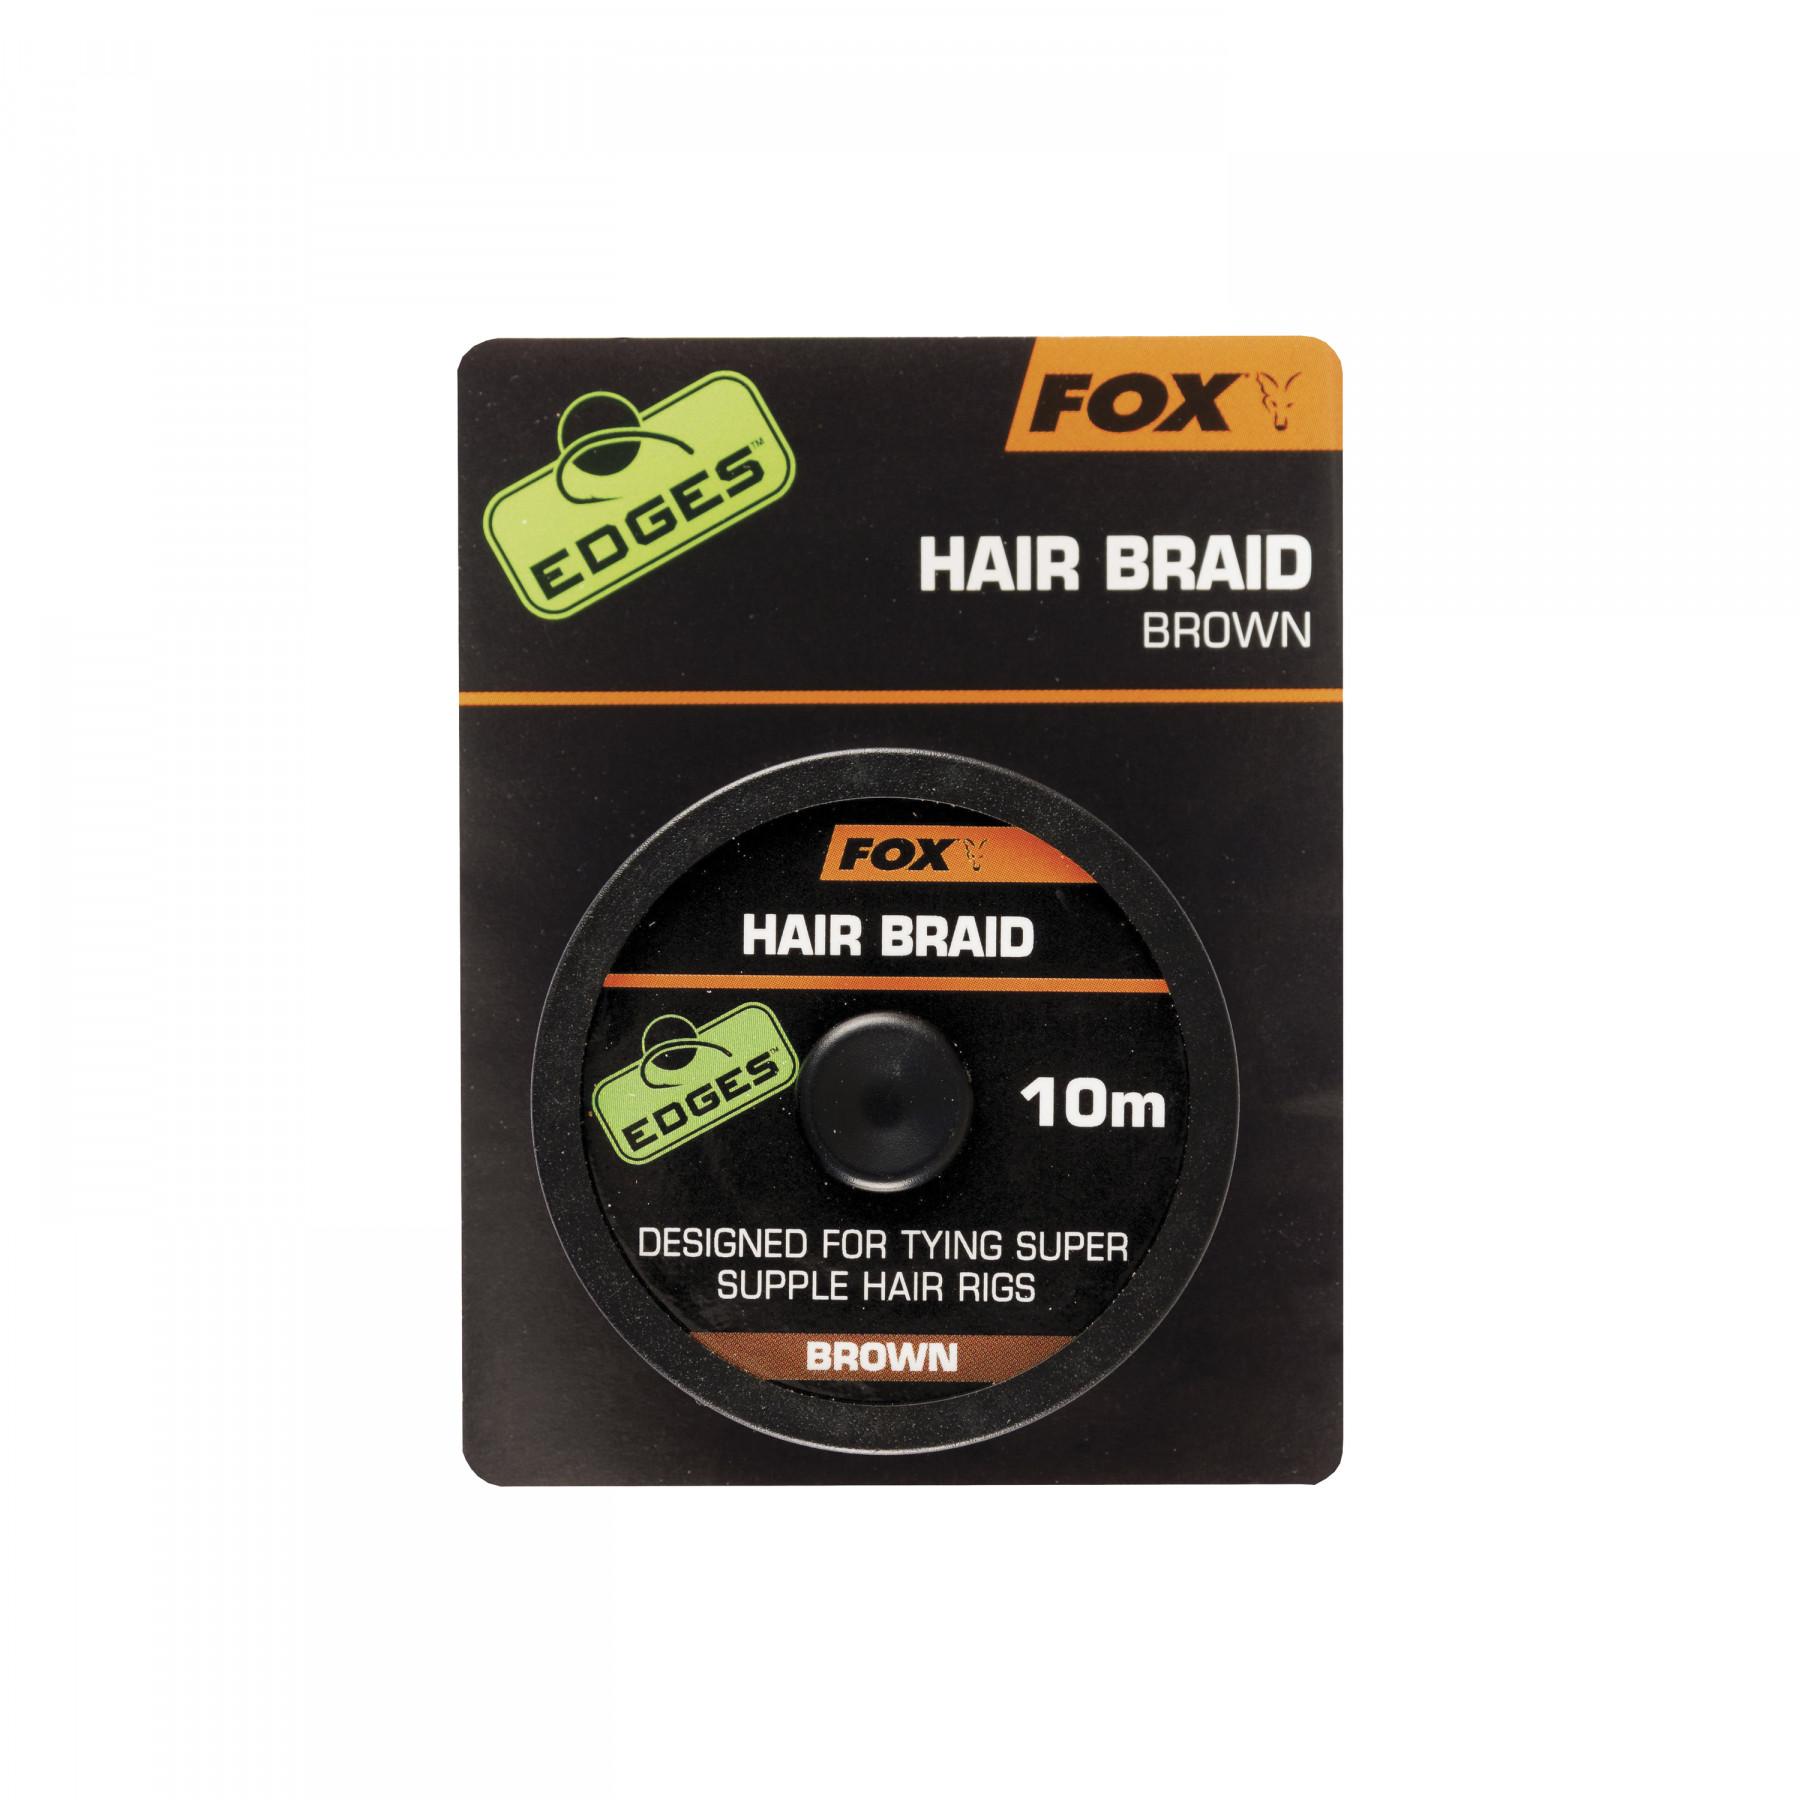 Fil tressé Hair braid Fox 10m Edges